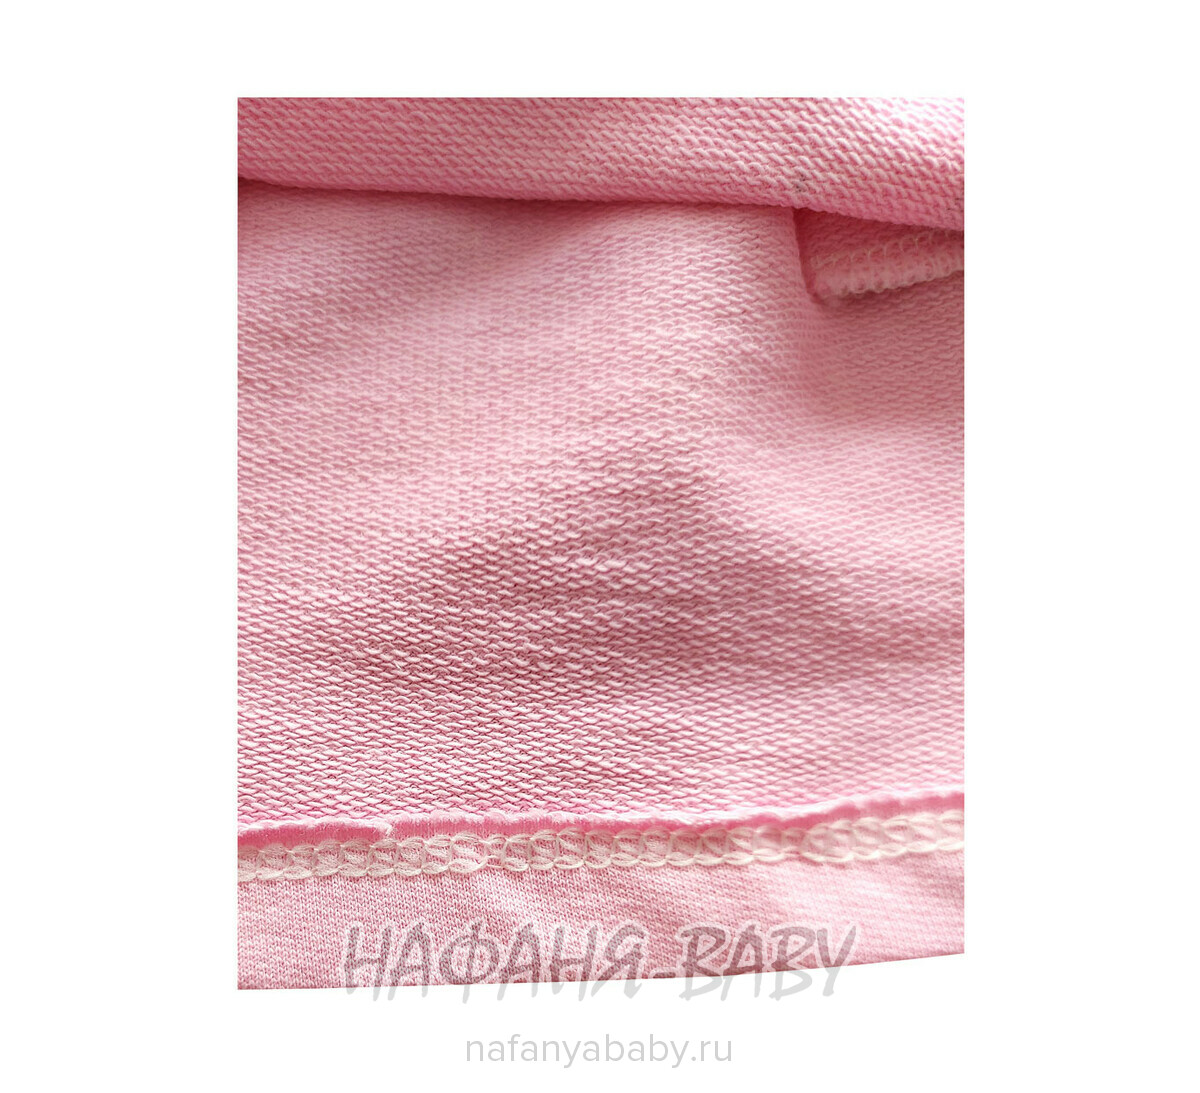 Детское платье ERAY Kids арт: 11309, 5-9 лет, 1-4 года, цвет розовый, оптом Турция